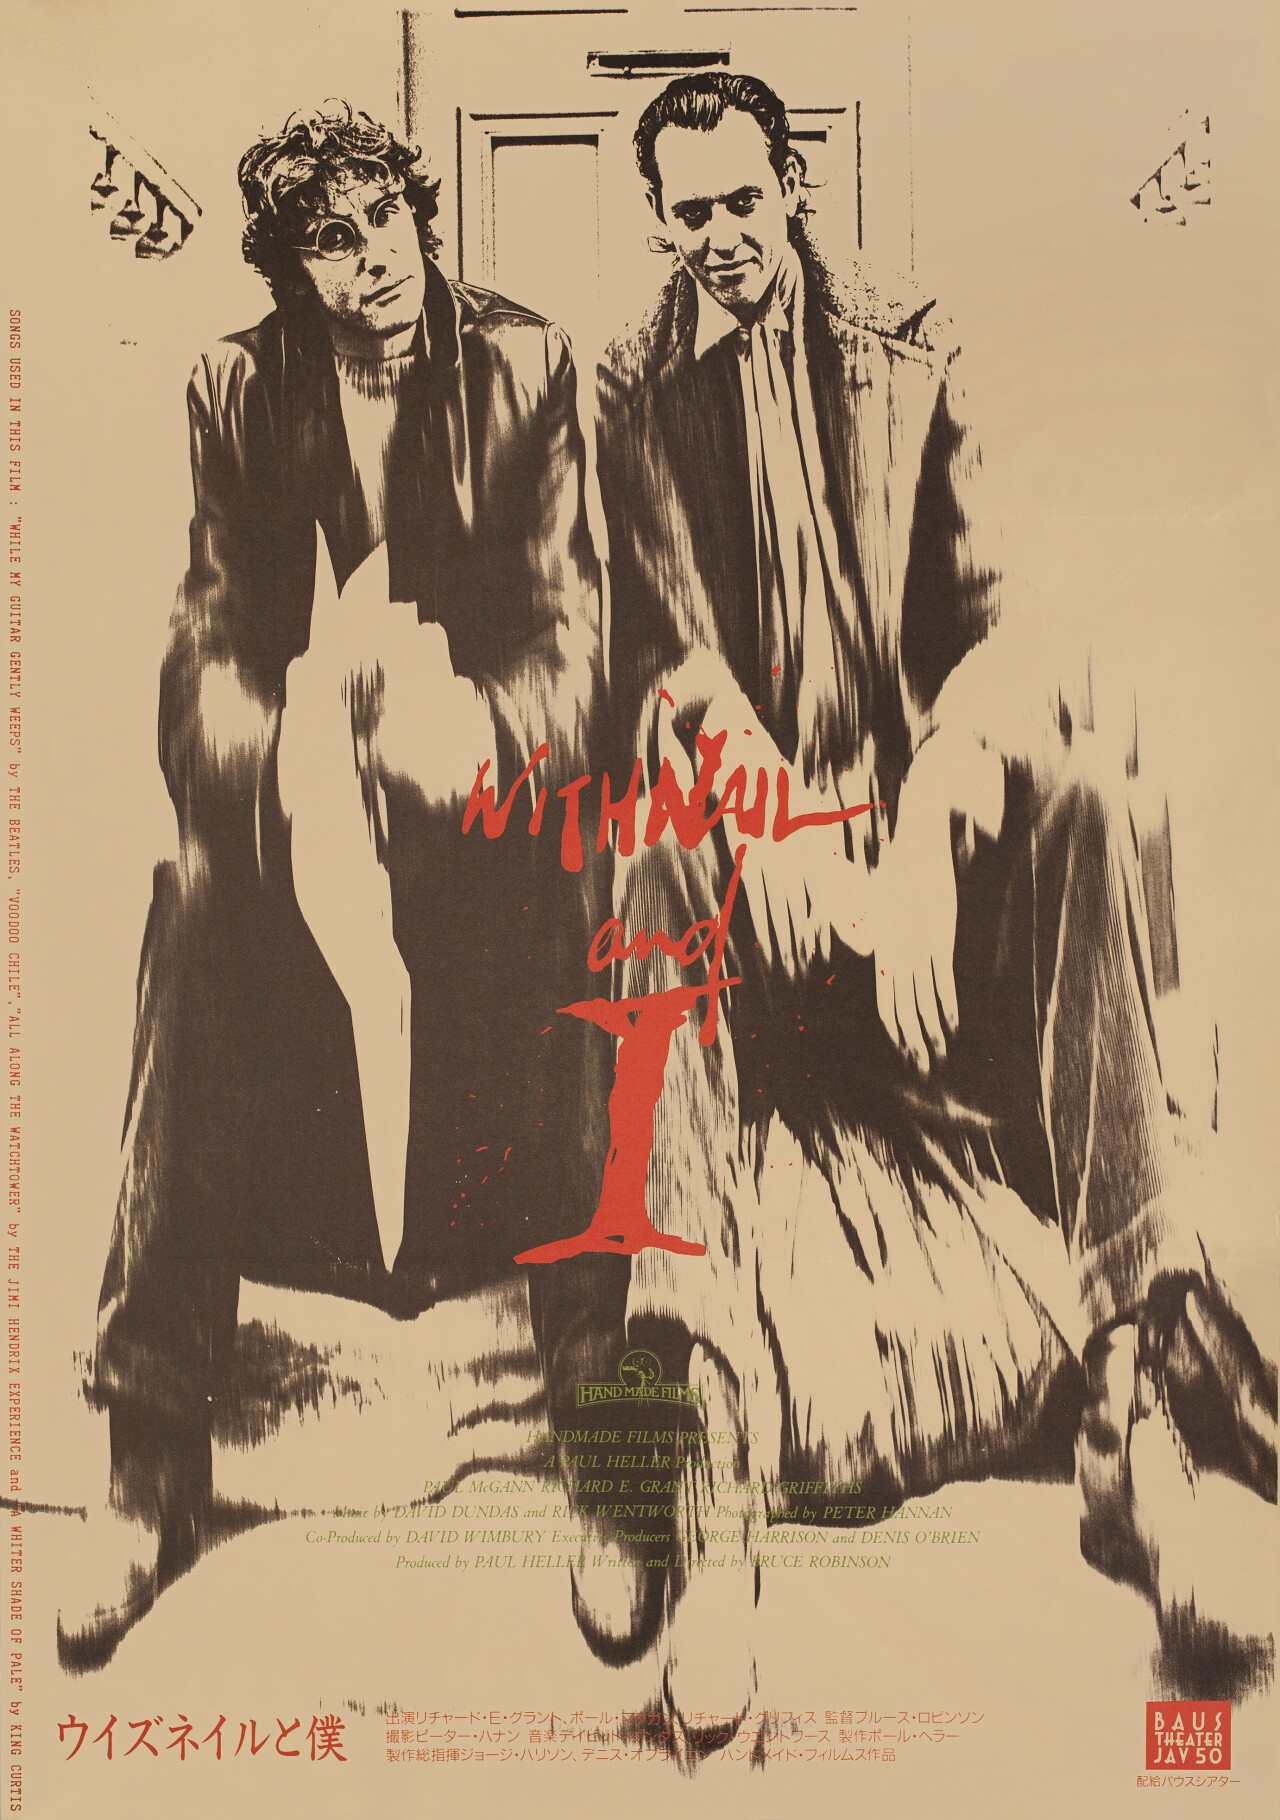 Уитнэйл и я (Withnail & I, 1987), режиссёр Брюс Робинсон, японский постер к фильму (графический дизайн, 1987 год)